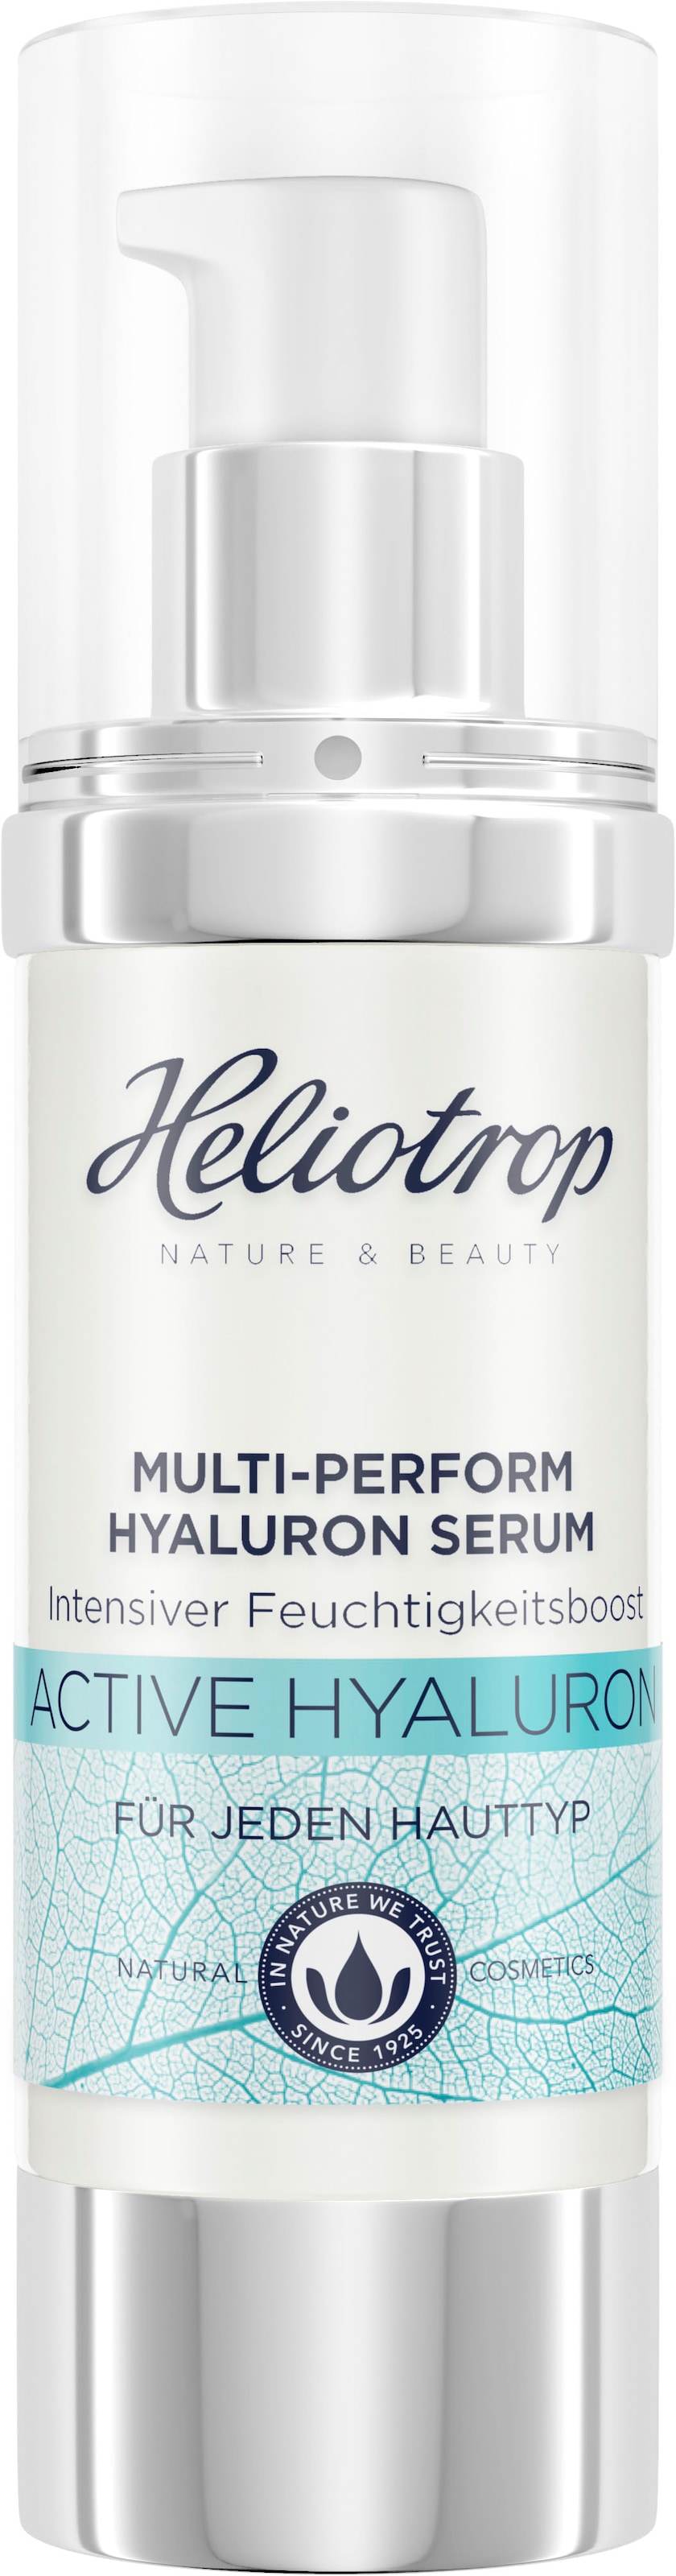 HELIOTROP Gesichtsserum »Active Hyaluron«